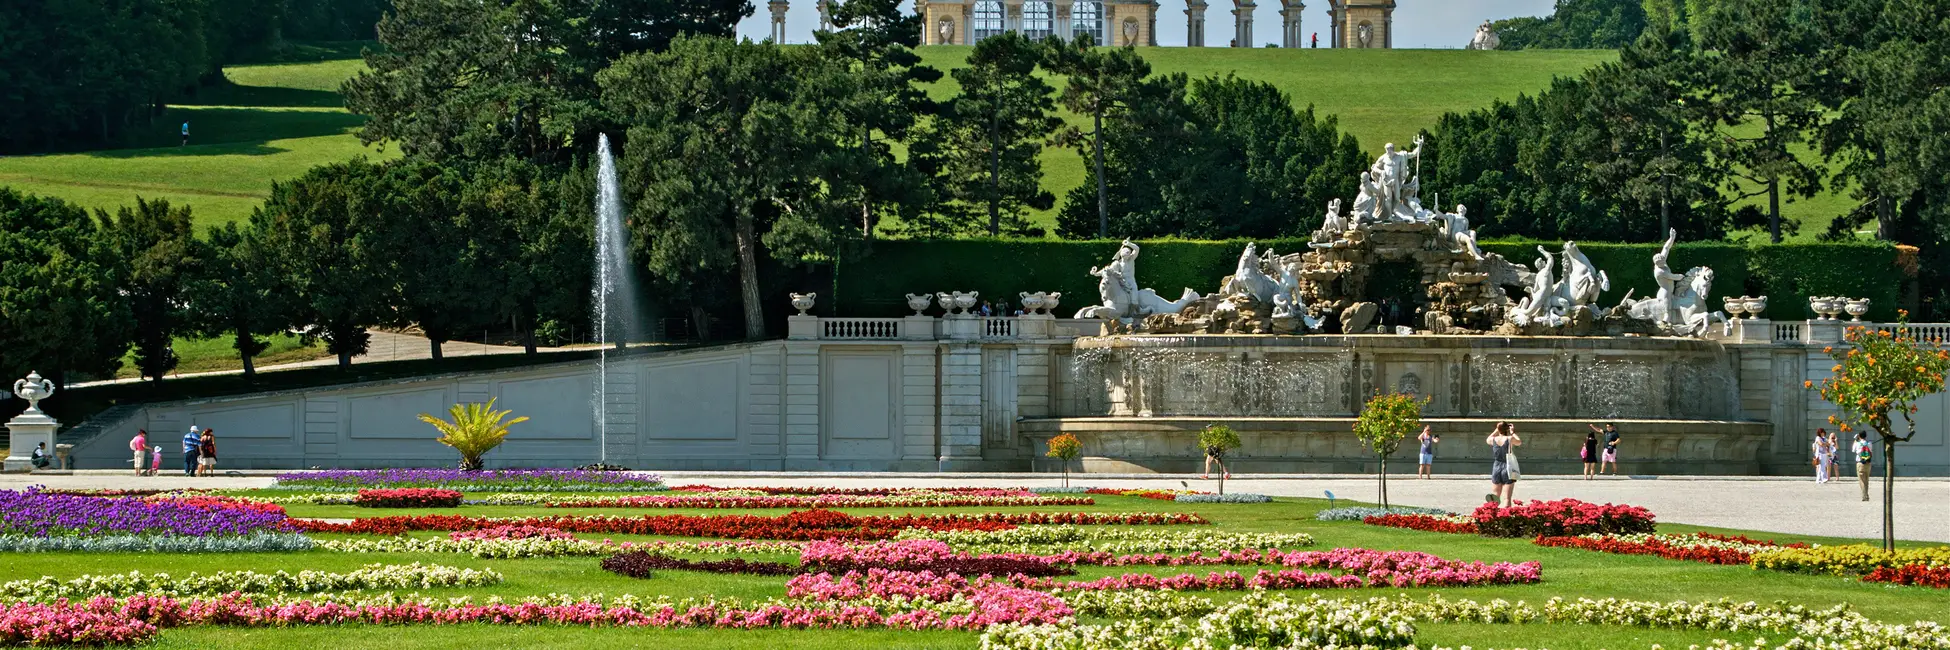 Palais Schonbrunn à Vienne